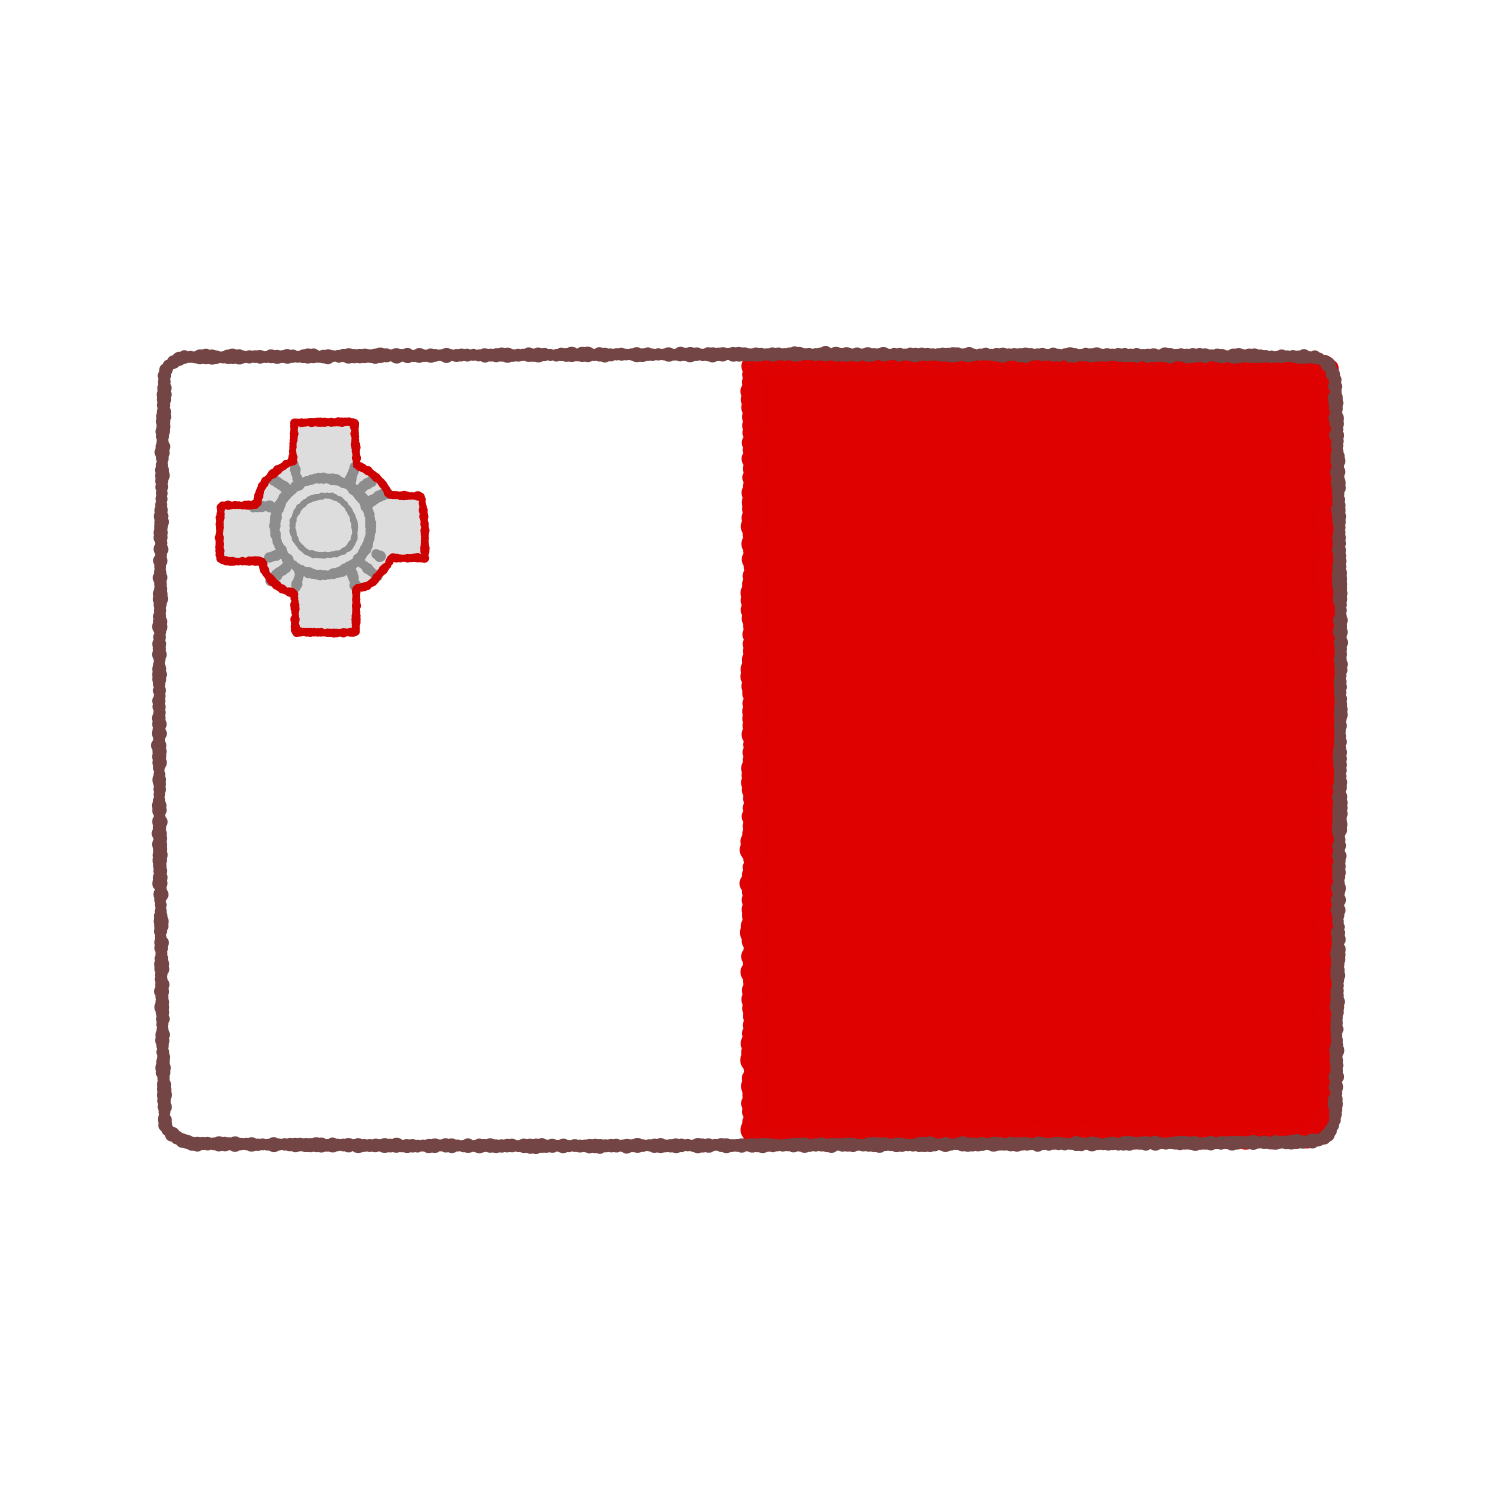 マルタ国旗のイラスト